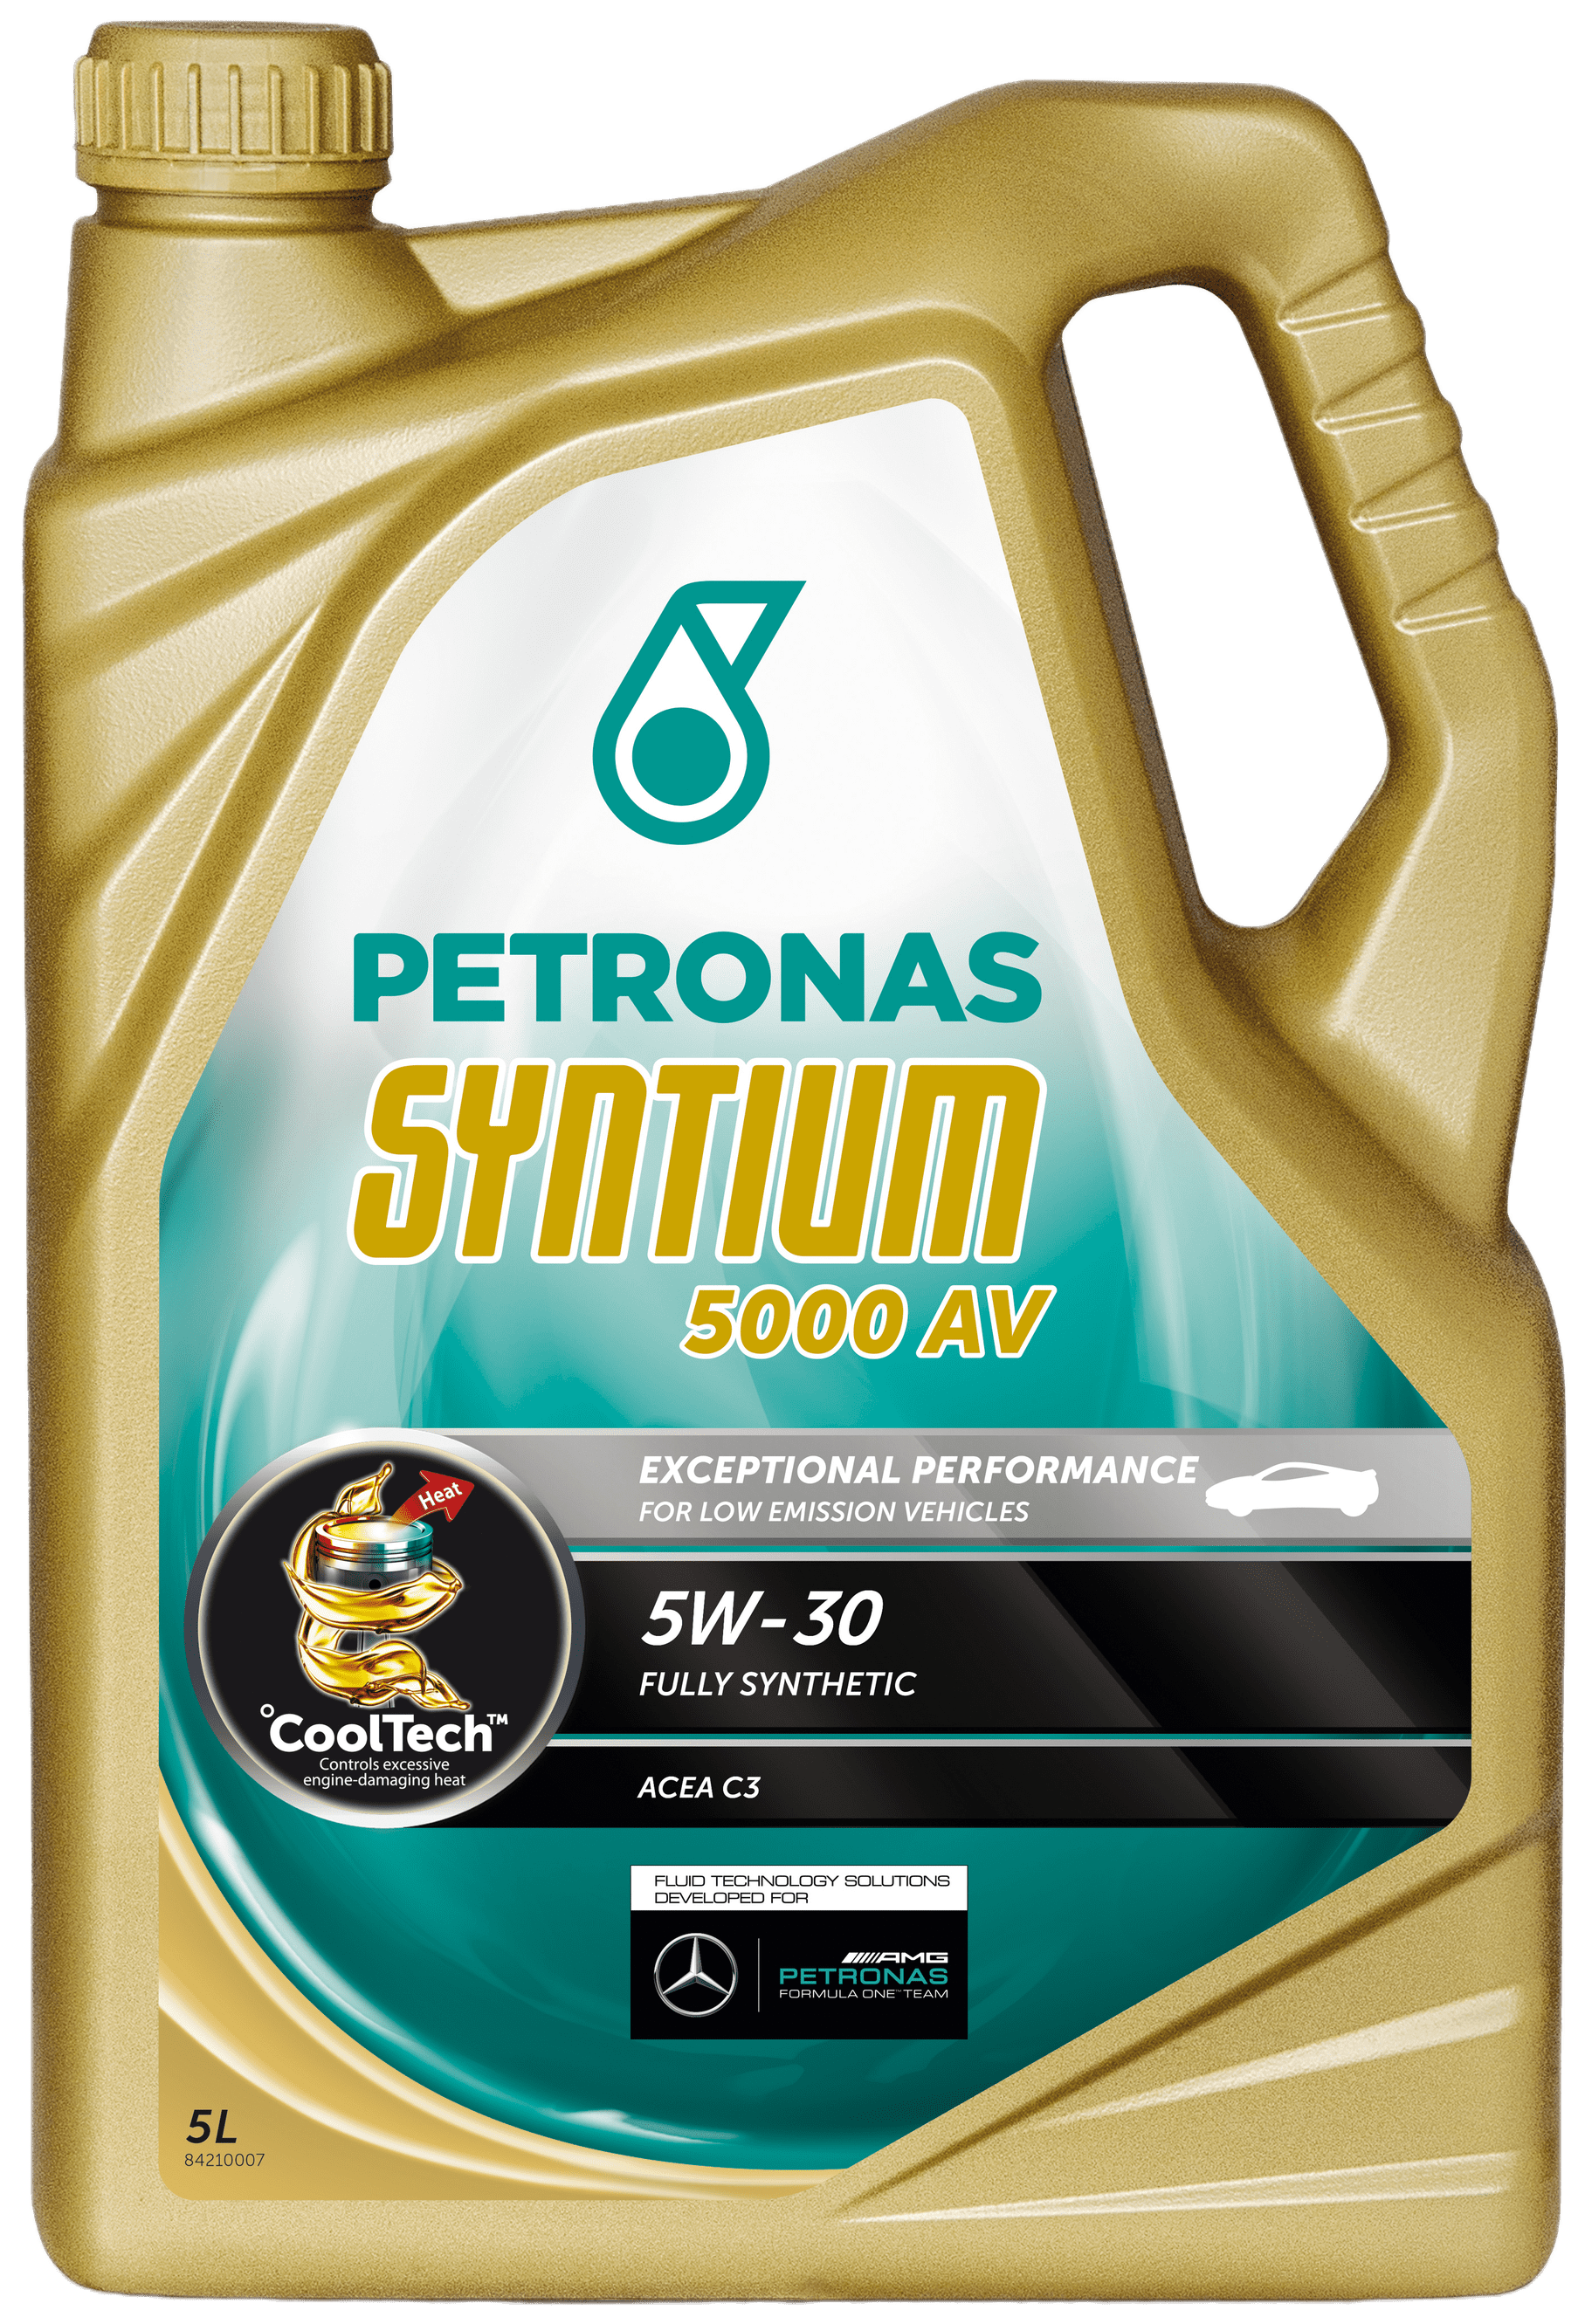 Petronas Syntium 5000 AV 5W-30, 5 lt